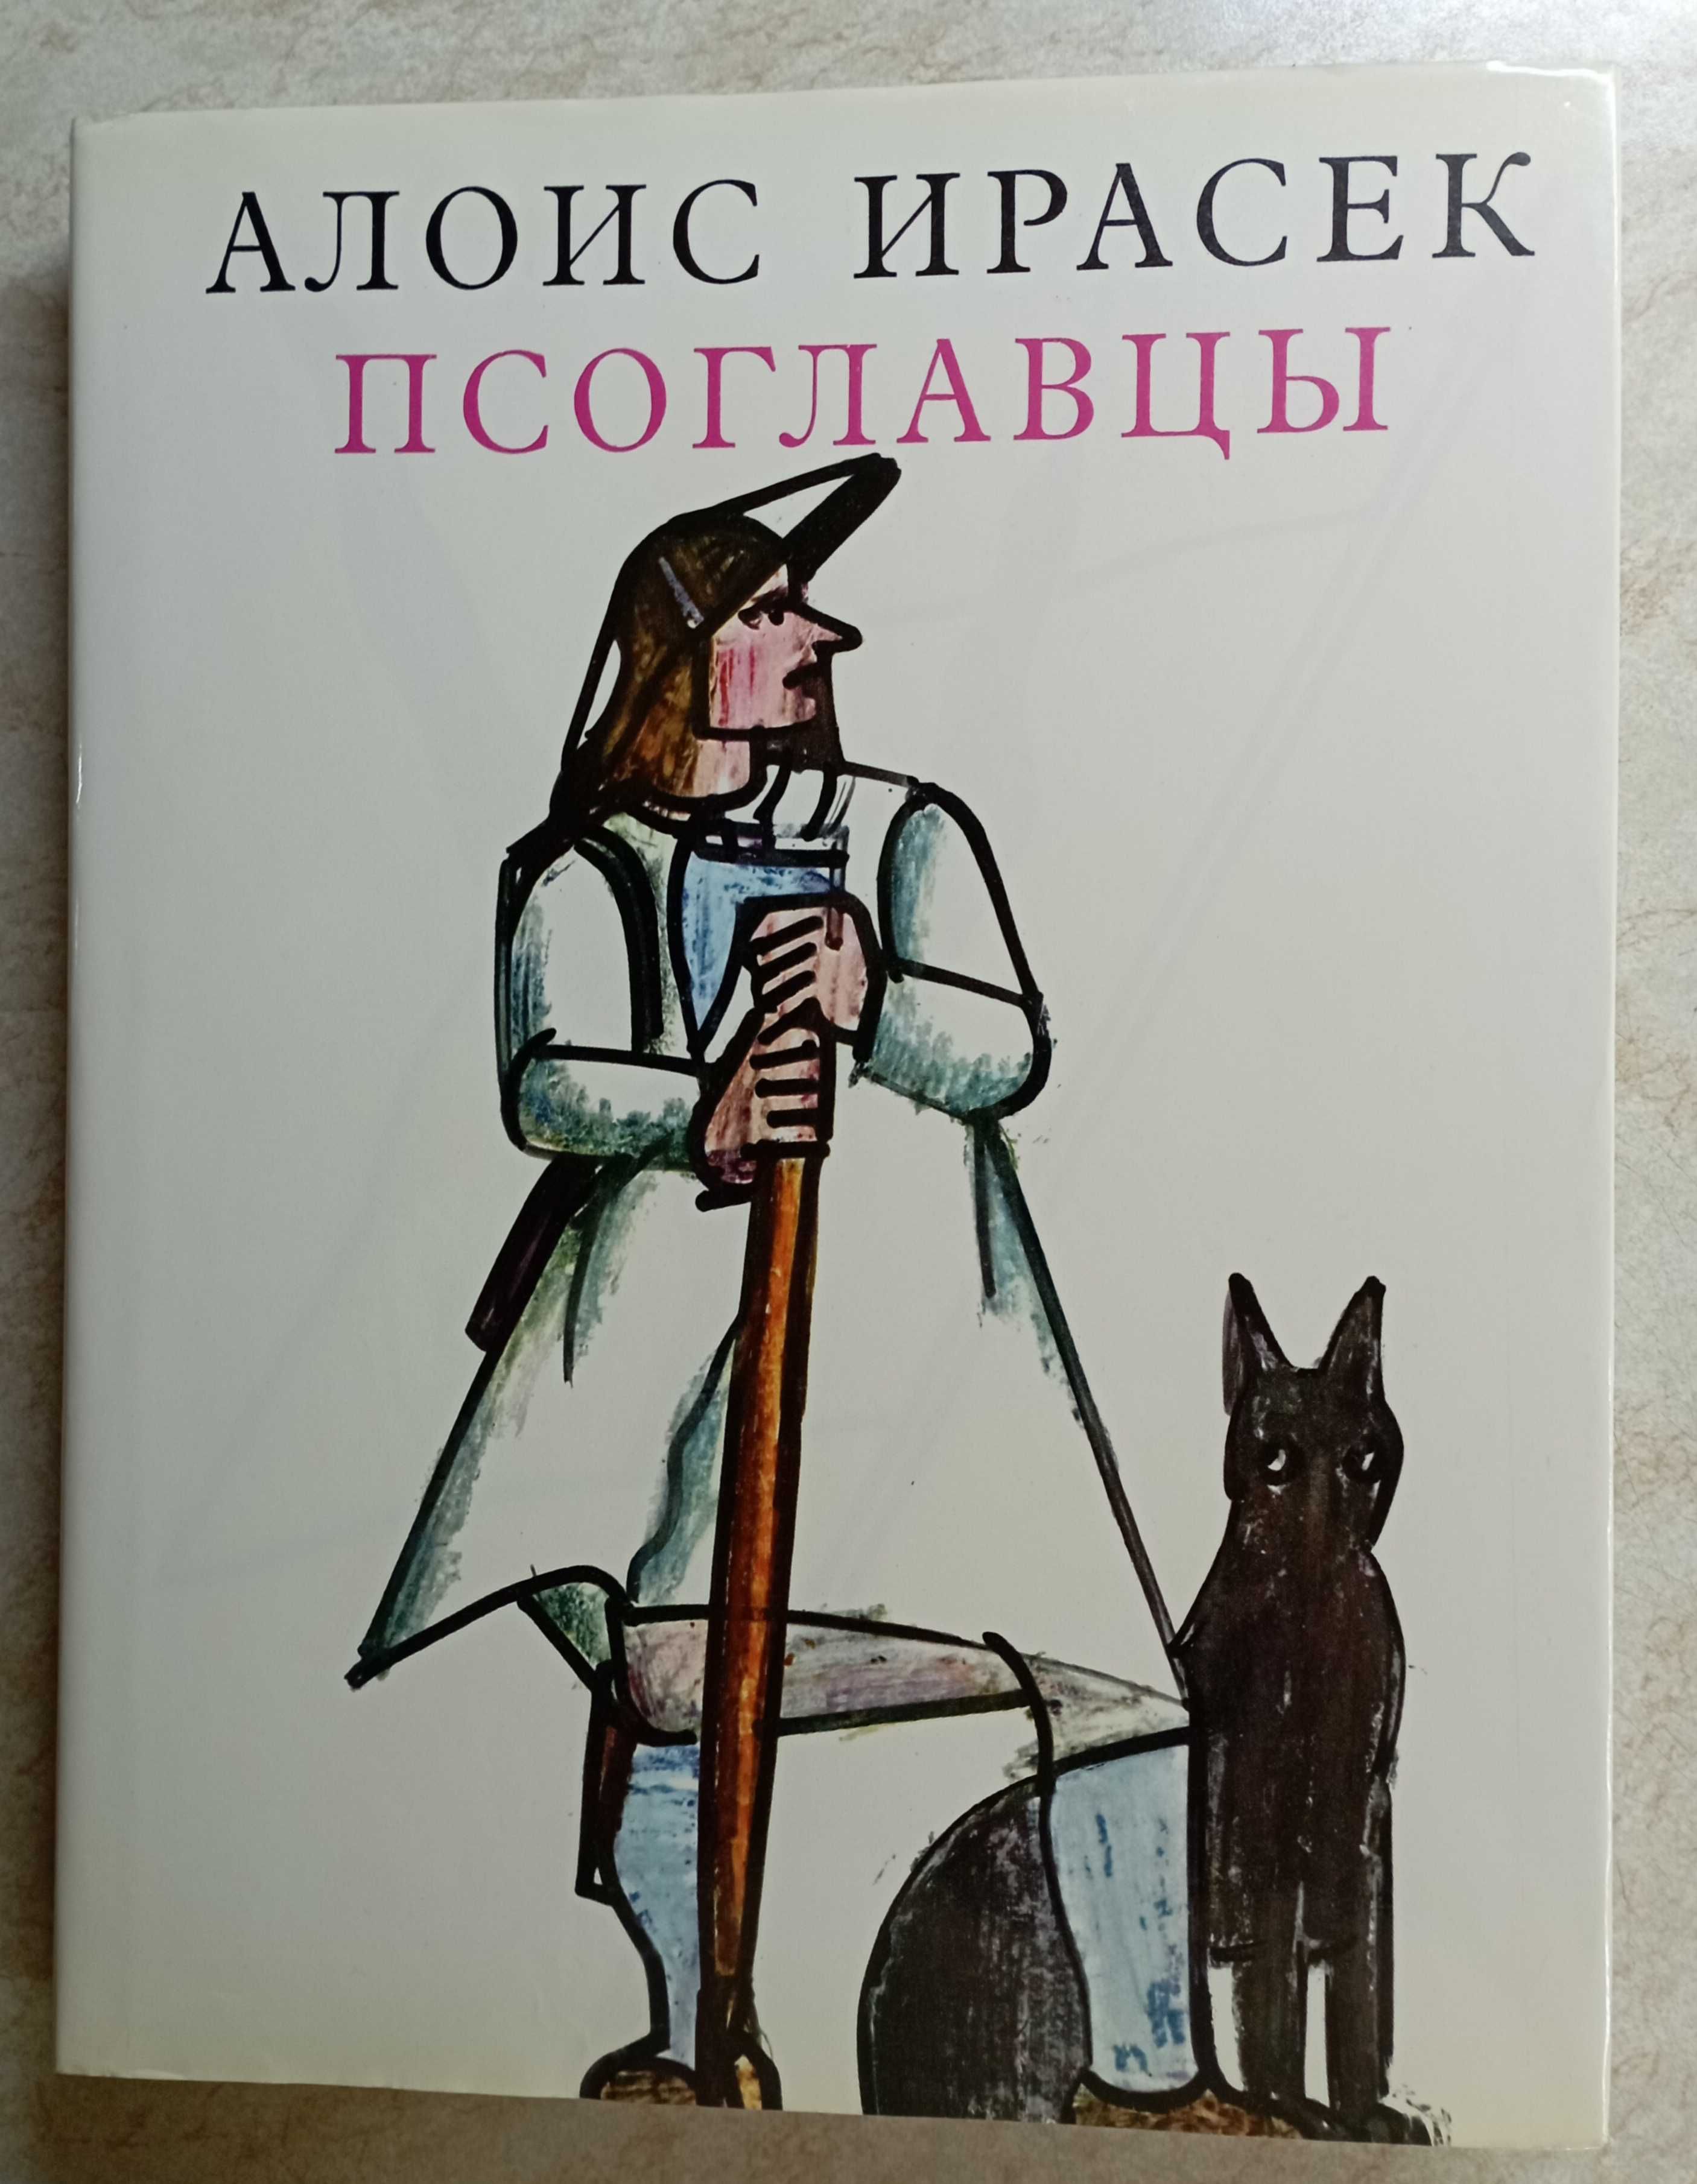 Я.Корчак "Пригоди Короля Мацюся". Божена Немцова. Книги .